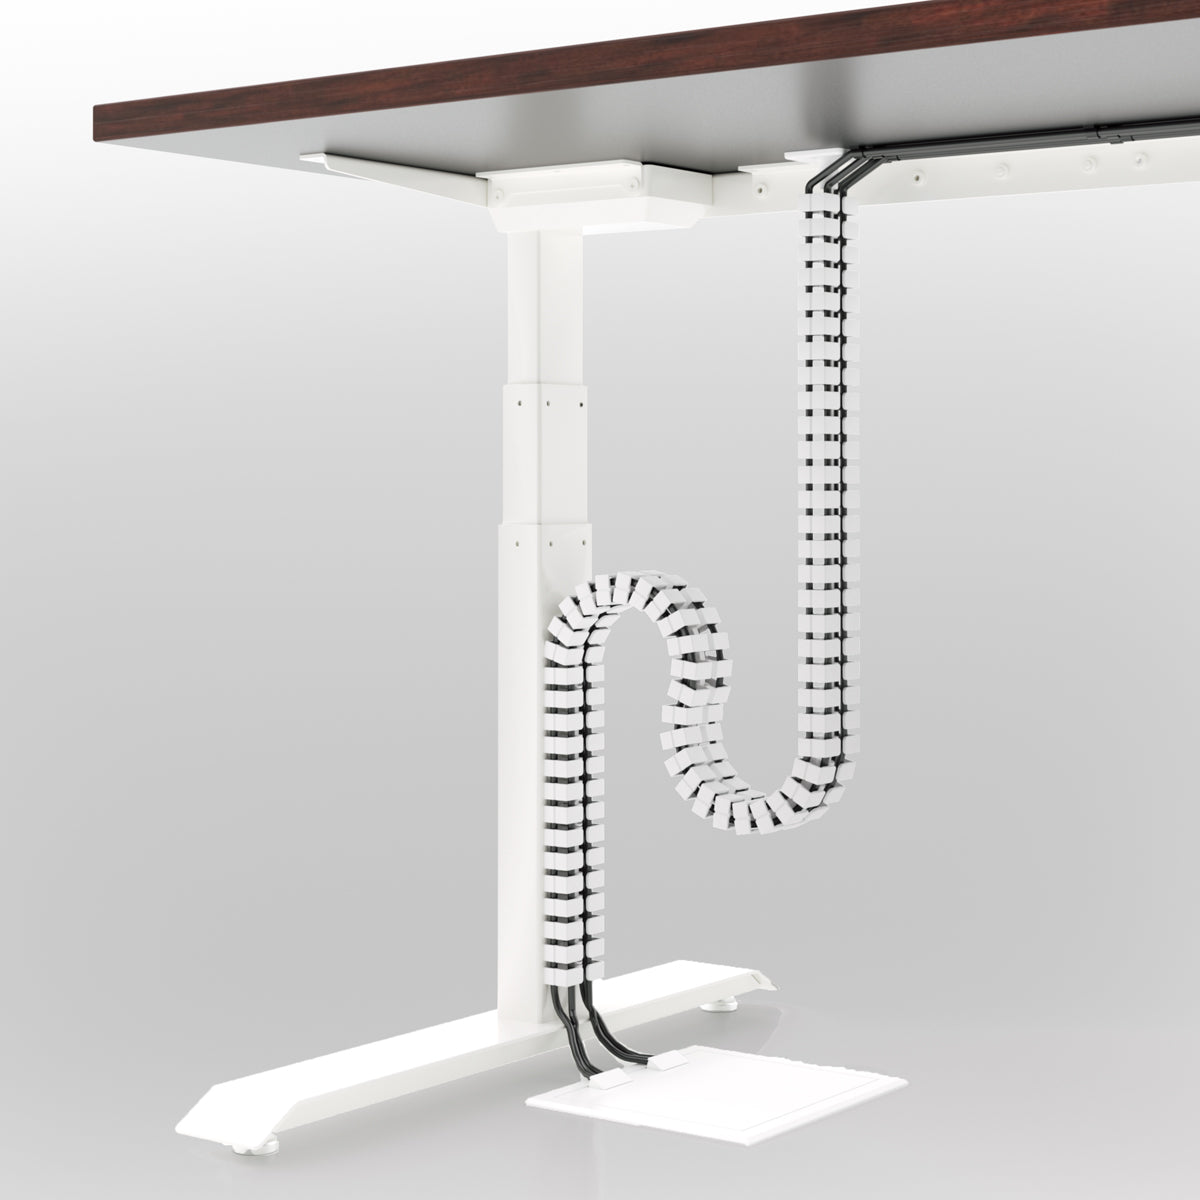 Uprite Ergo Organizador de cables de malla, organizador ergonómico de  cables para escritorios de altura ajustable (gris)